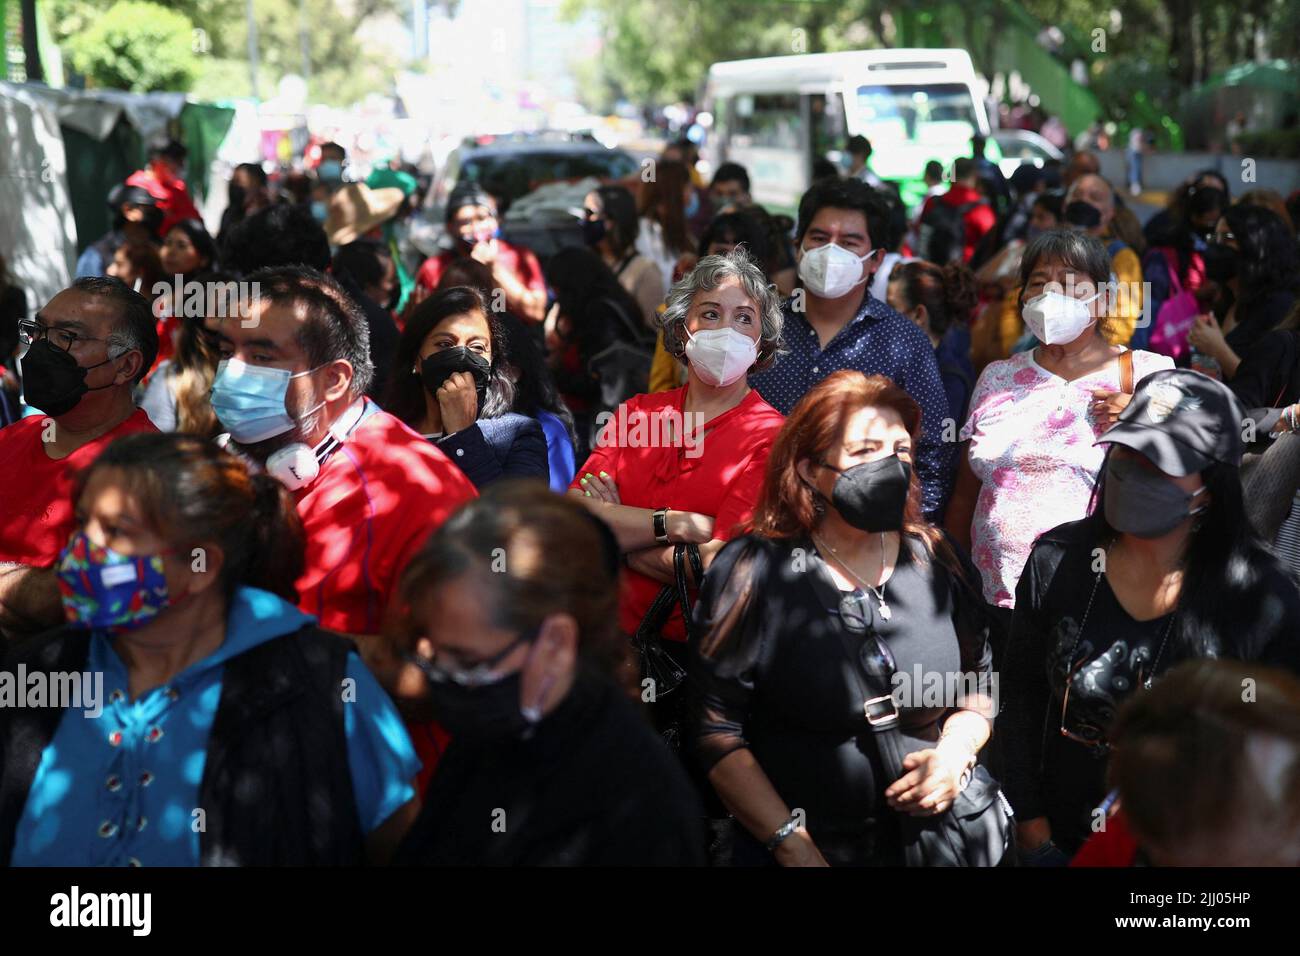 Los empleados protestan frente a la sede de Telmex después de que el sindicato de la compañía se declarara en huelga después de no llegar a un acuerdo con la compañía sobre un nuevo convenio colectivo laboral, en Ciudad de México, México, el 21 de julio de 2022. REUTERS/Edgard Garrido Foto de stock